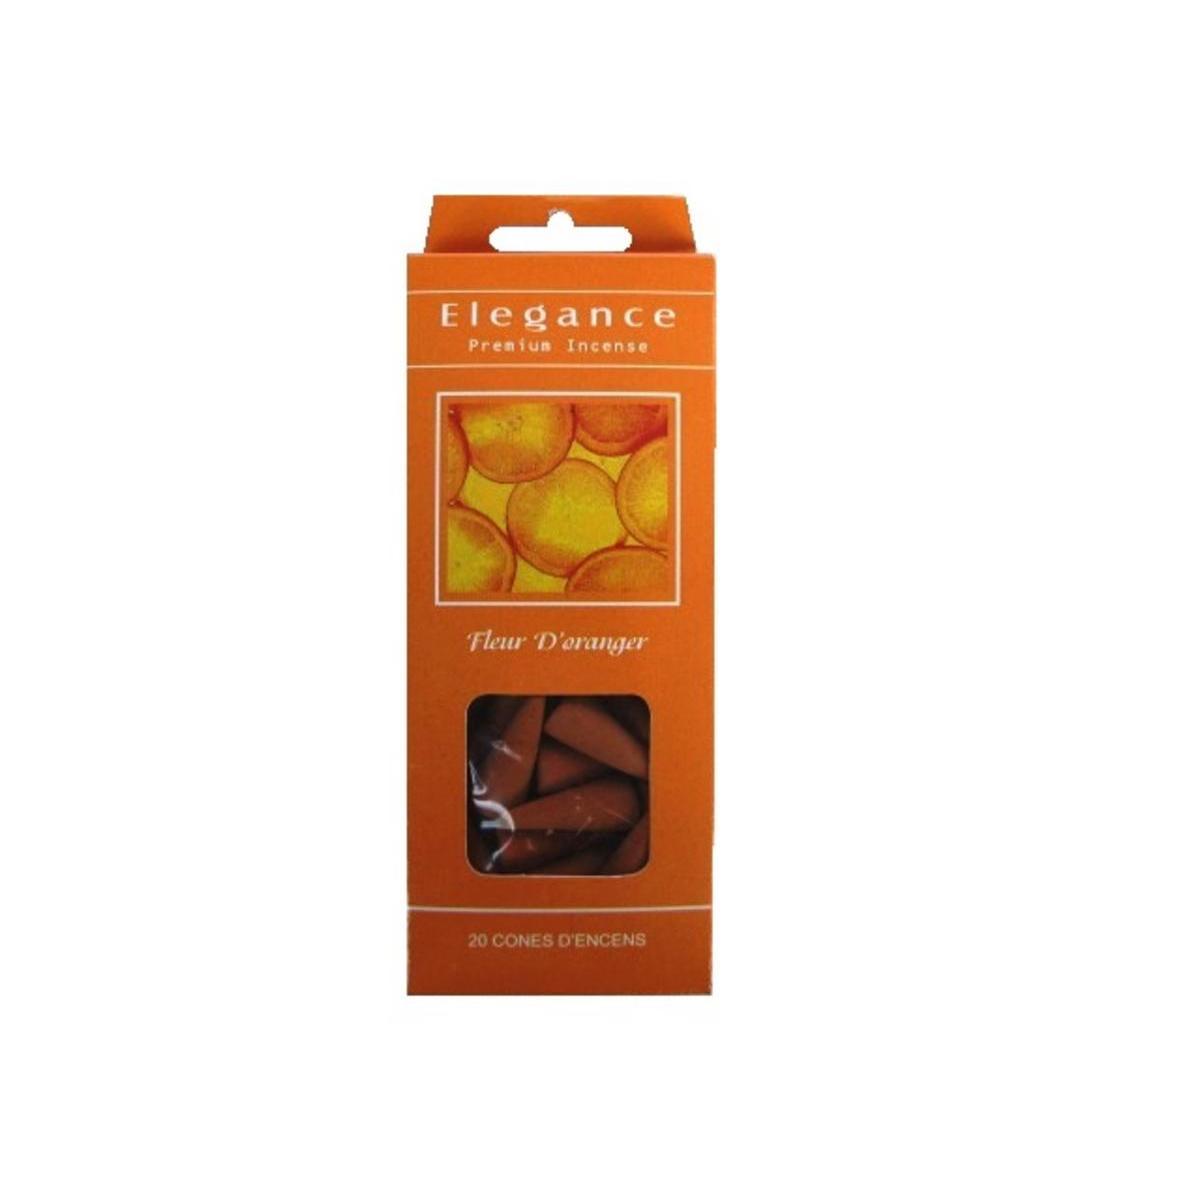 20 cônes d'encens Fleurs d'oranger- Ø 2,5 x 1 cm - Poudres aromatiques - Orange